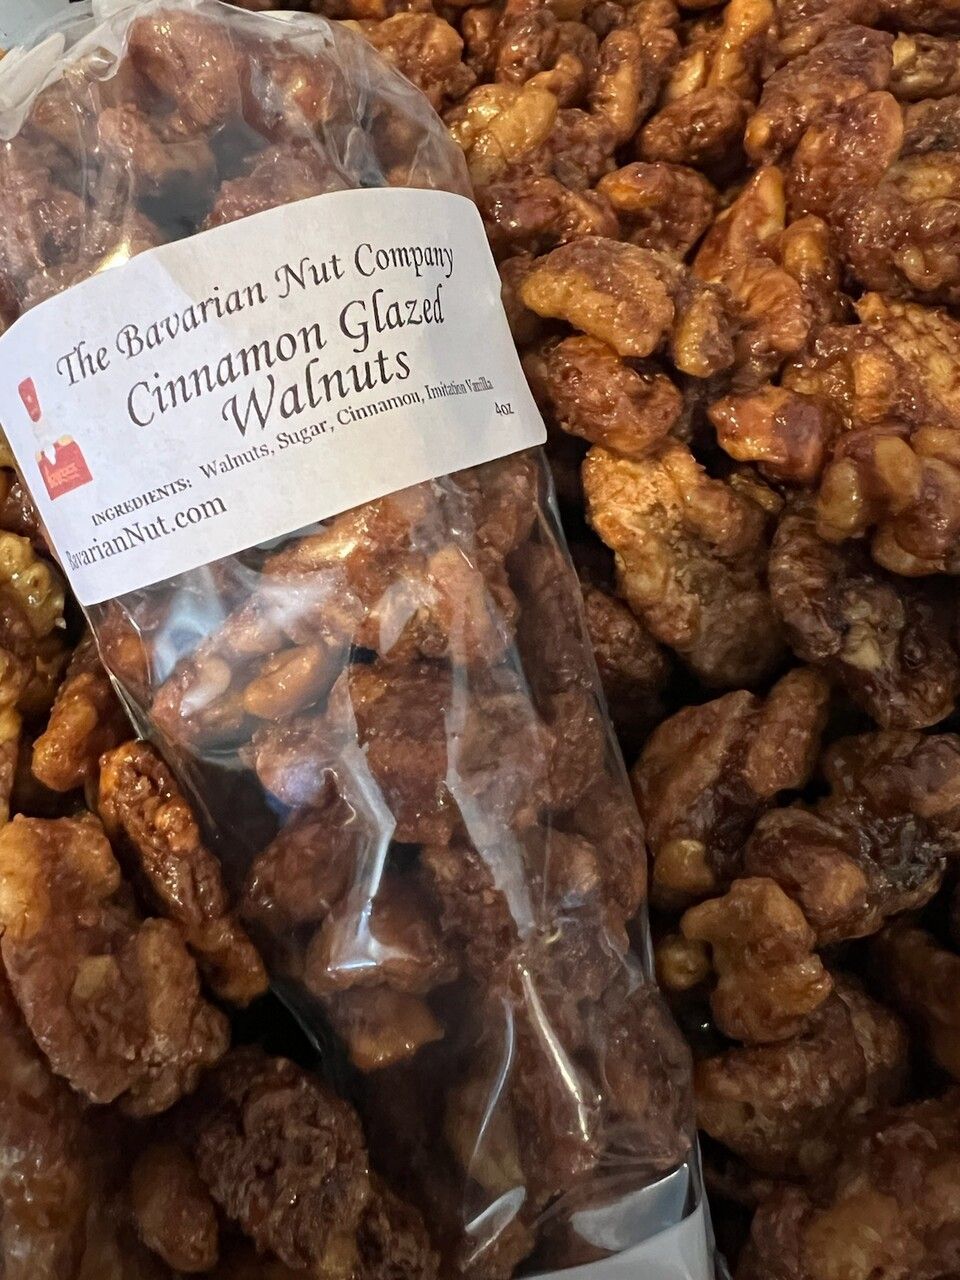 Cinnamon Glazed Walnuts - Priced by weight